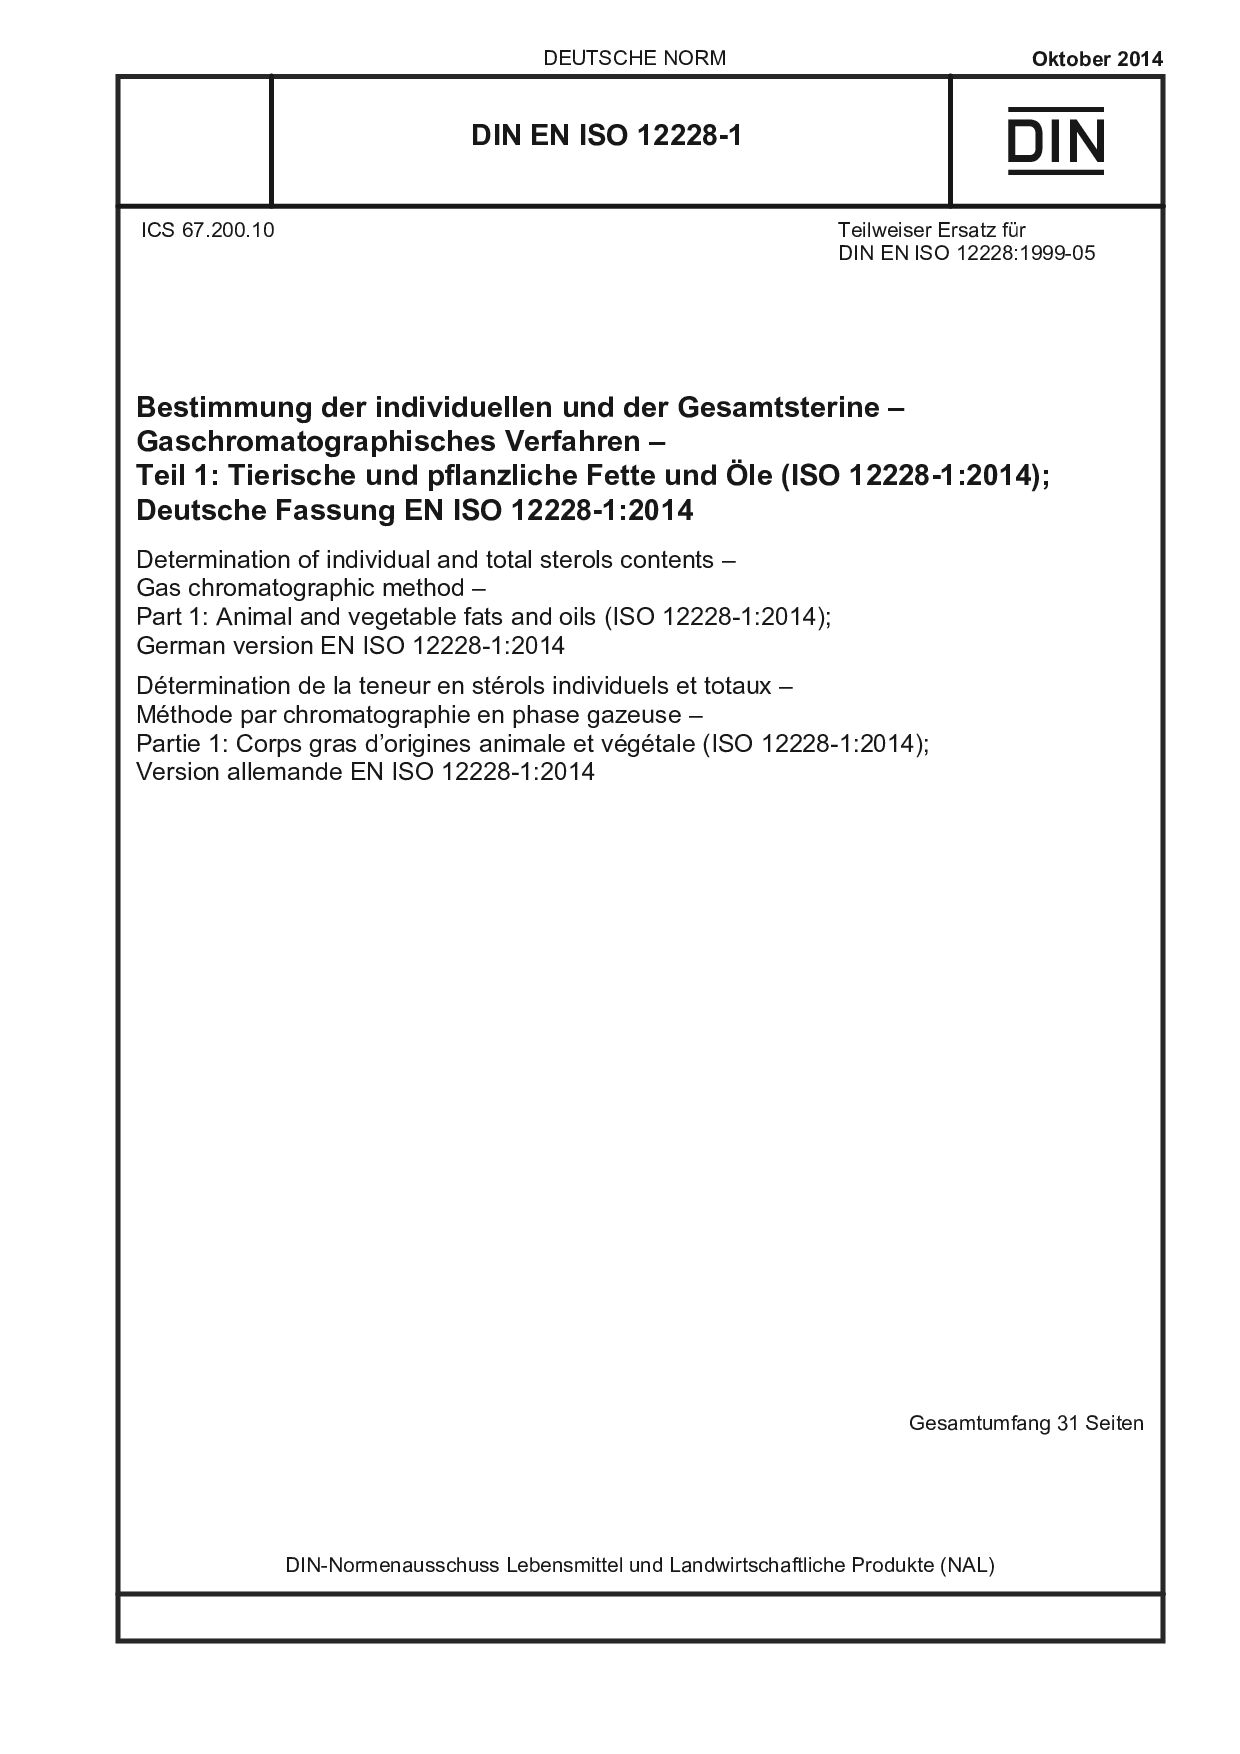 DIN EN ISO 12228-1:2014